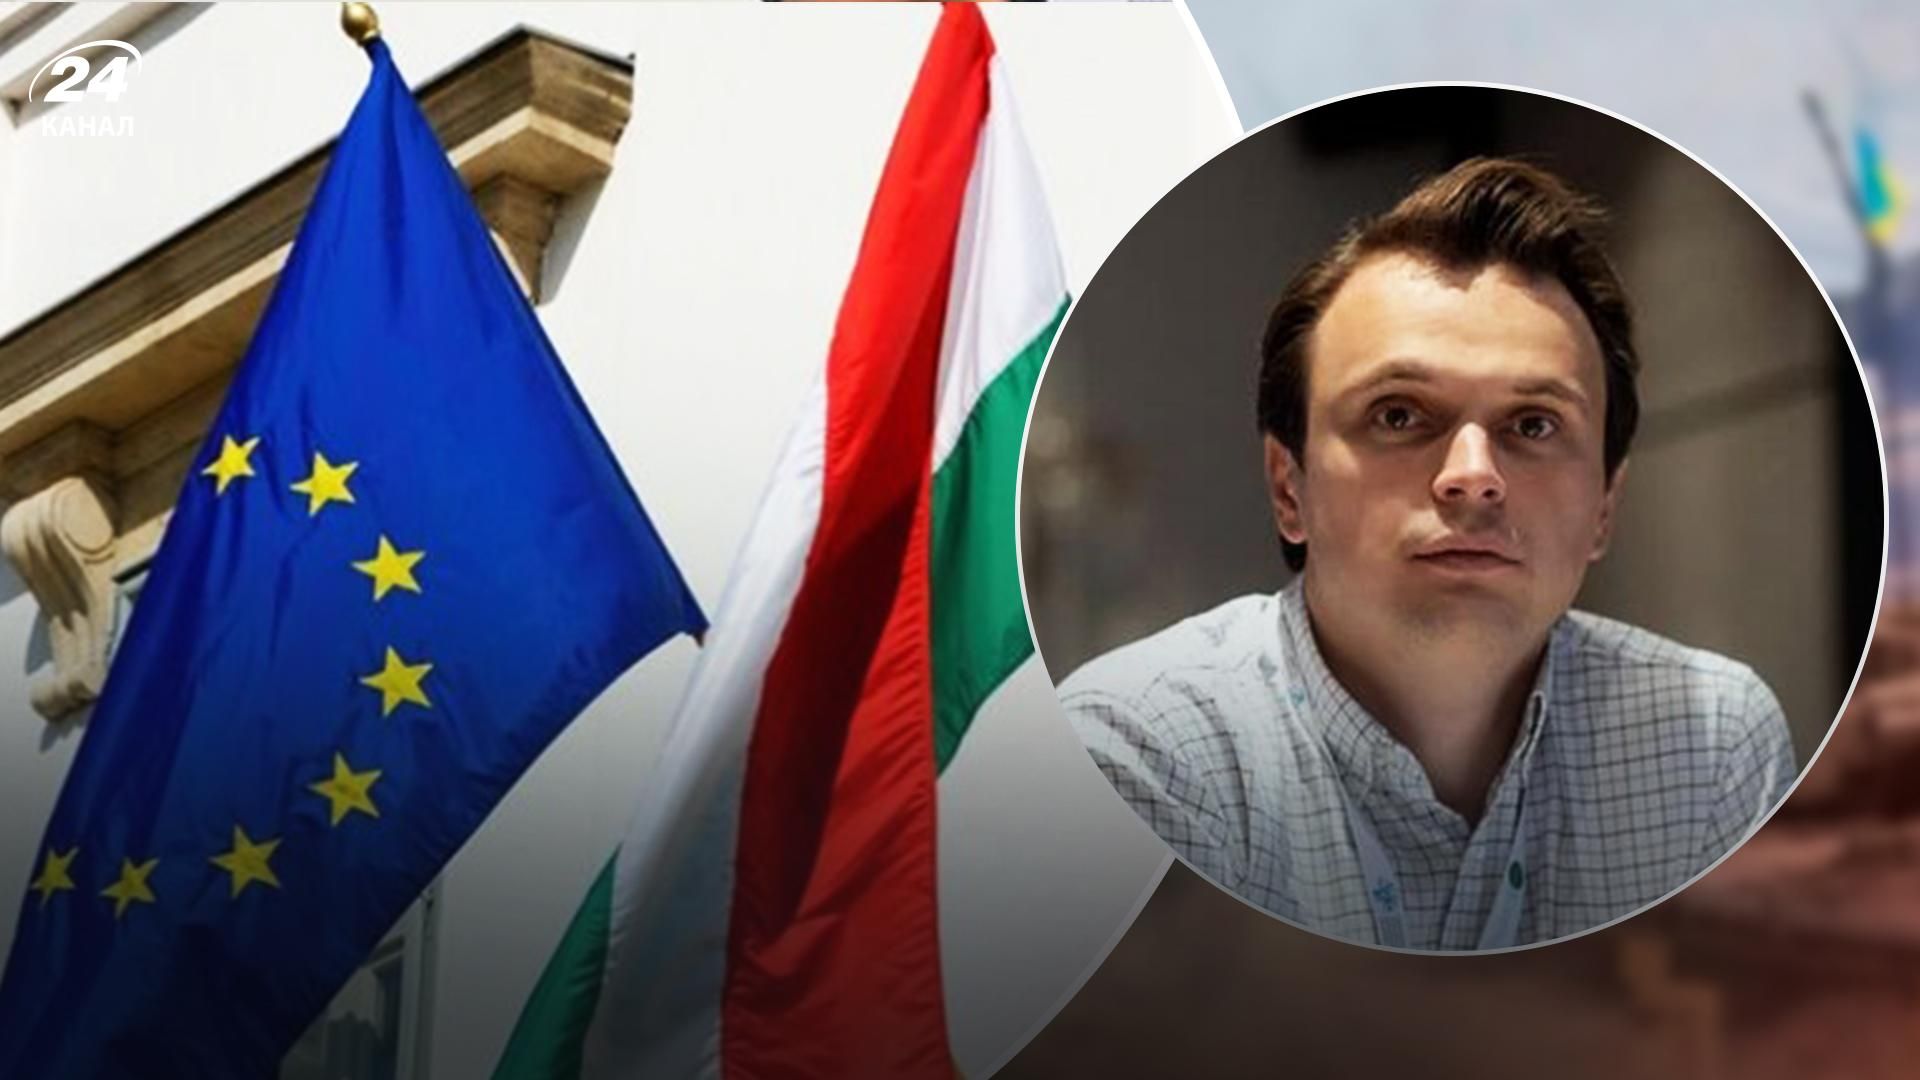 Угорщина займає місце України в Євросоюзі, – політолог Давидюк